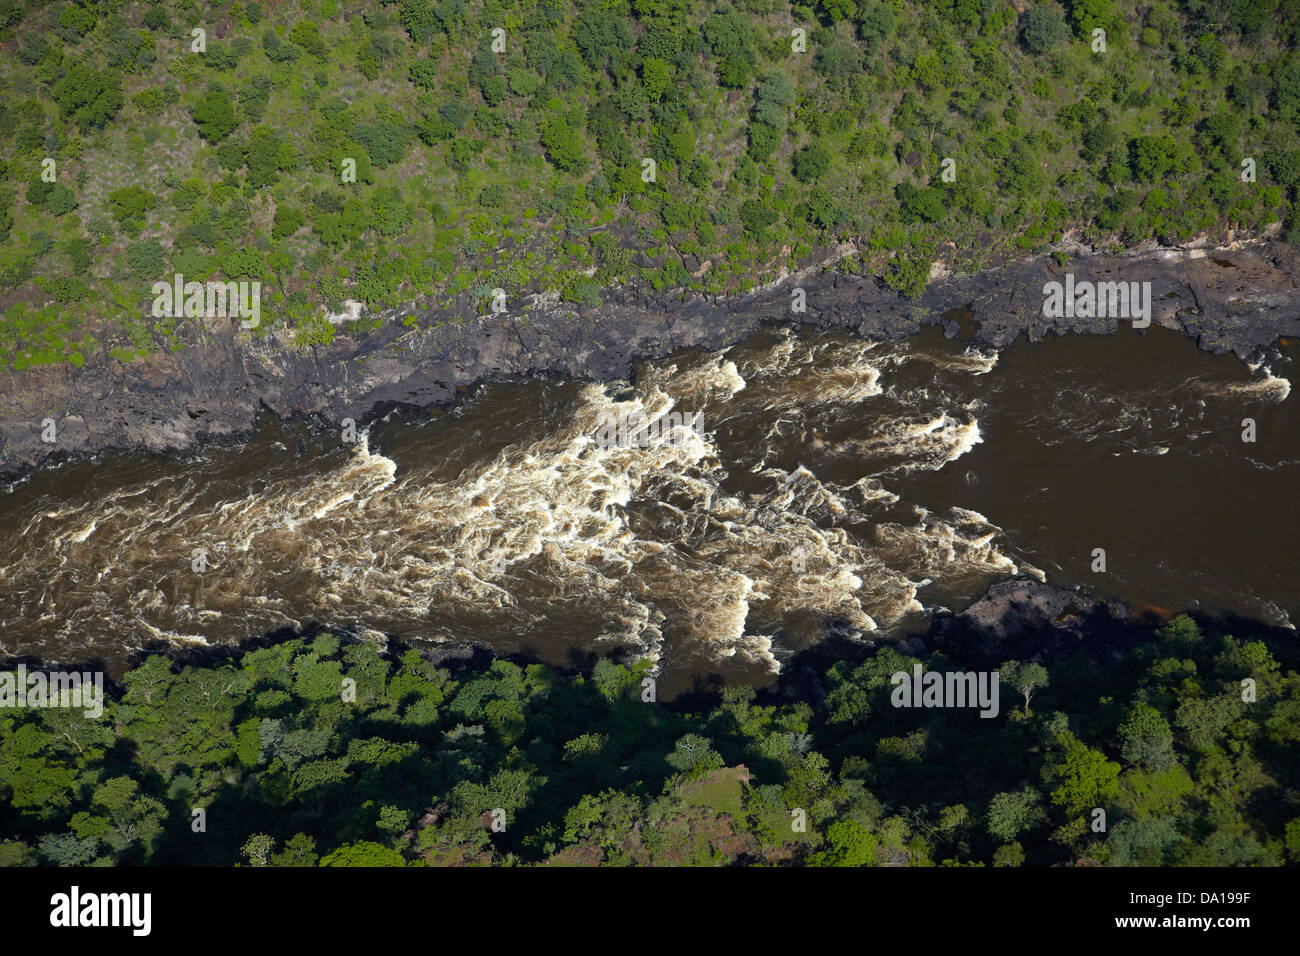 Rapids blancs de l'eau sur le fleuve Zambèze dans Gorge Batoka Victoria Falls, Zimbabwe / Zambie Afrique du Sud, la frontière - vue aérienne Banque D'Images